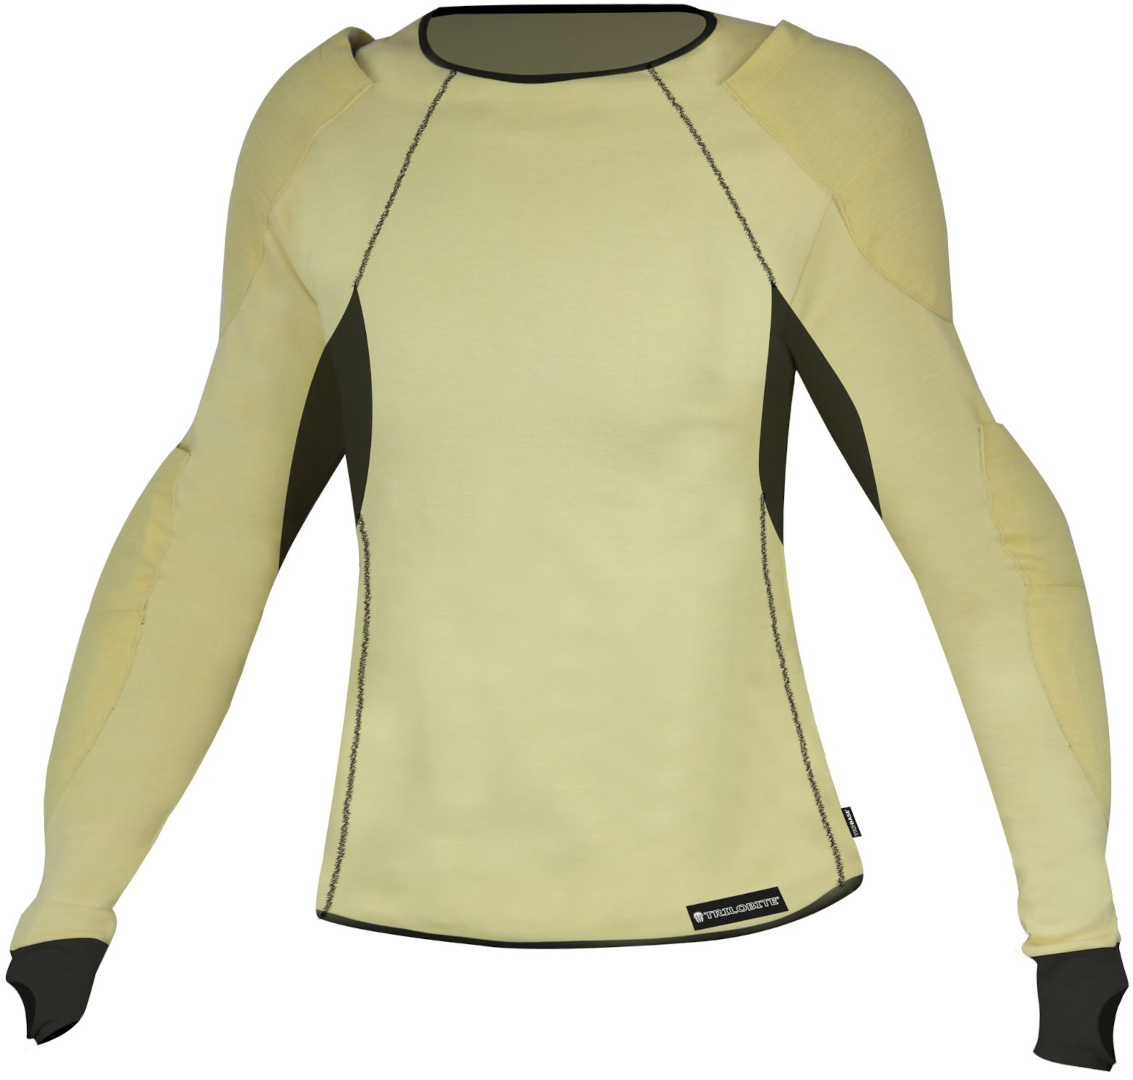 Рубашка женская Trilobite Skintec Aramid функциональная, желтый/зеленый